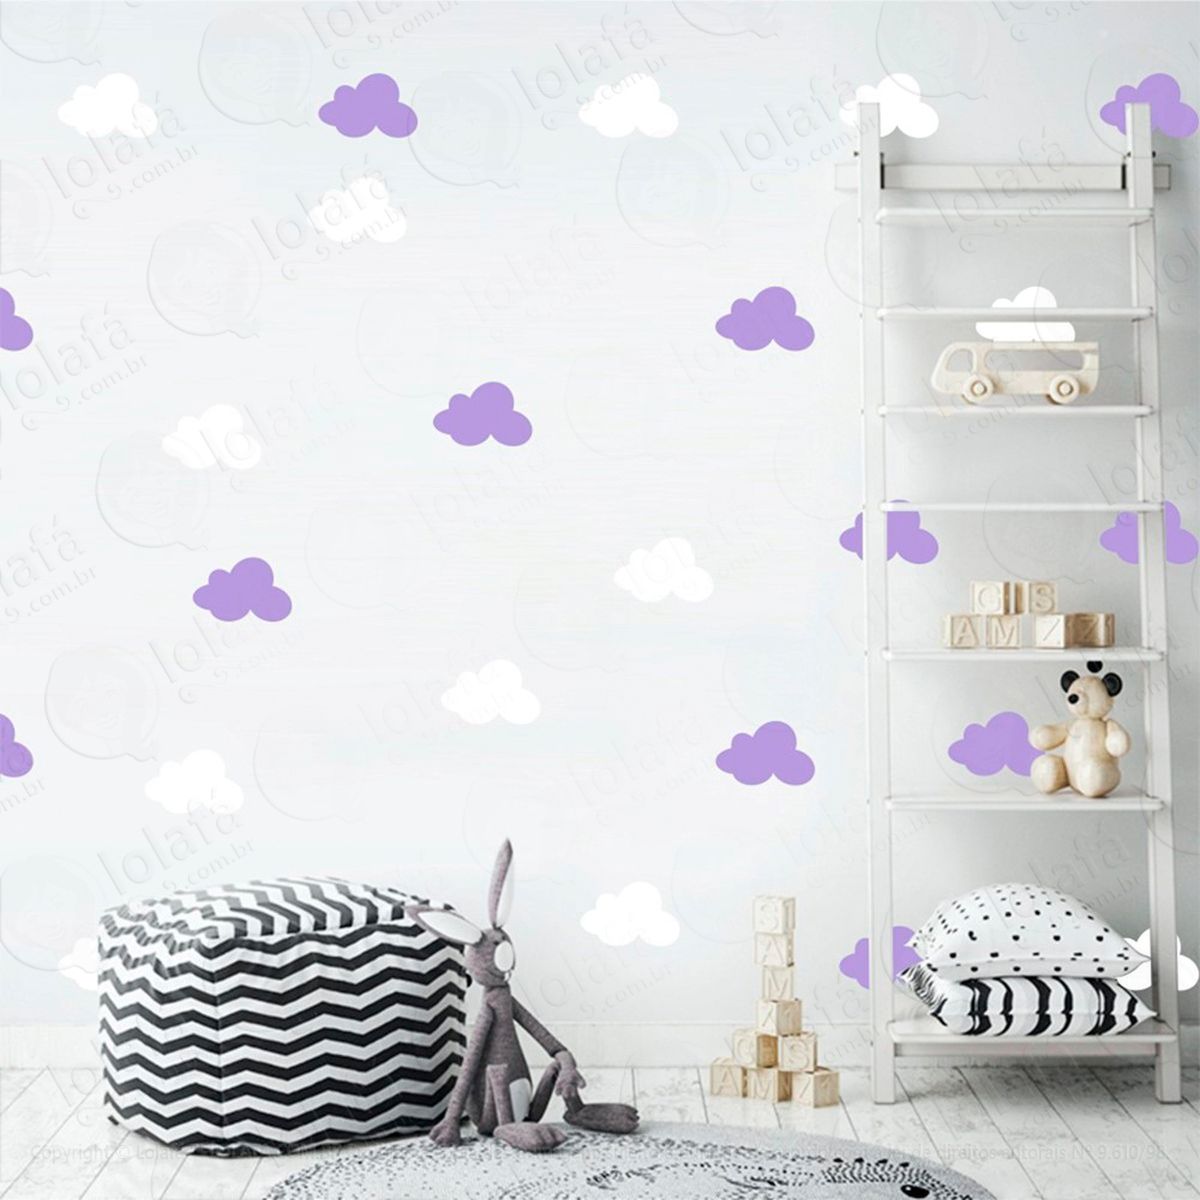 adesivos nuvens 36 peças adesivos para quarto de bebê infantil - mod:501